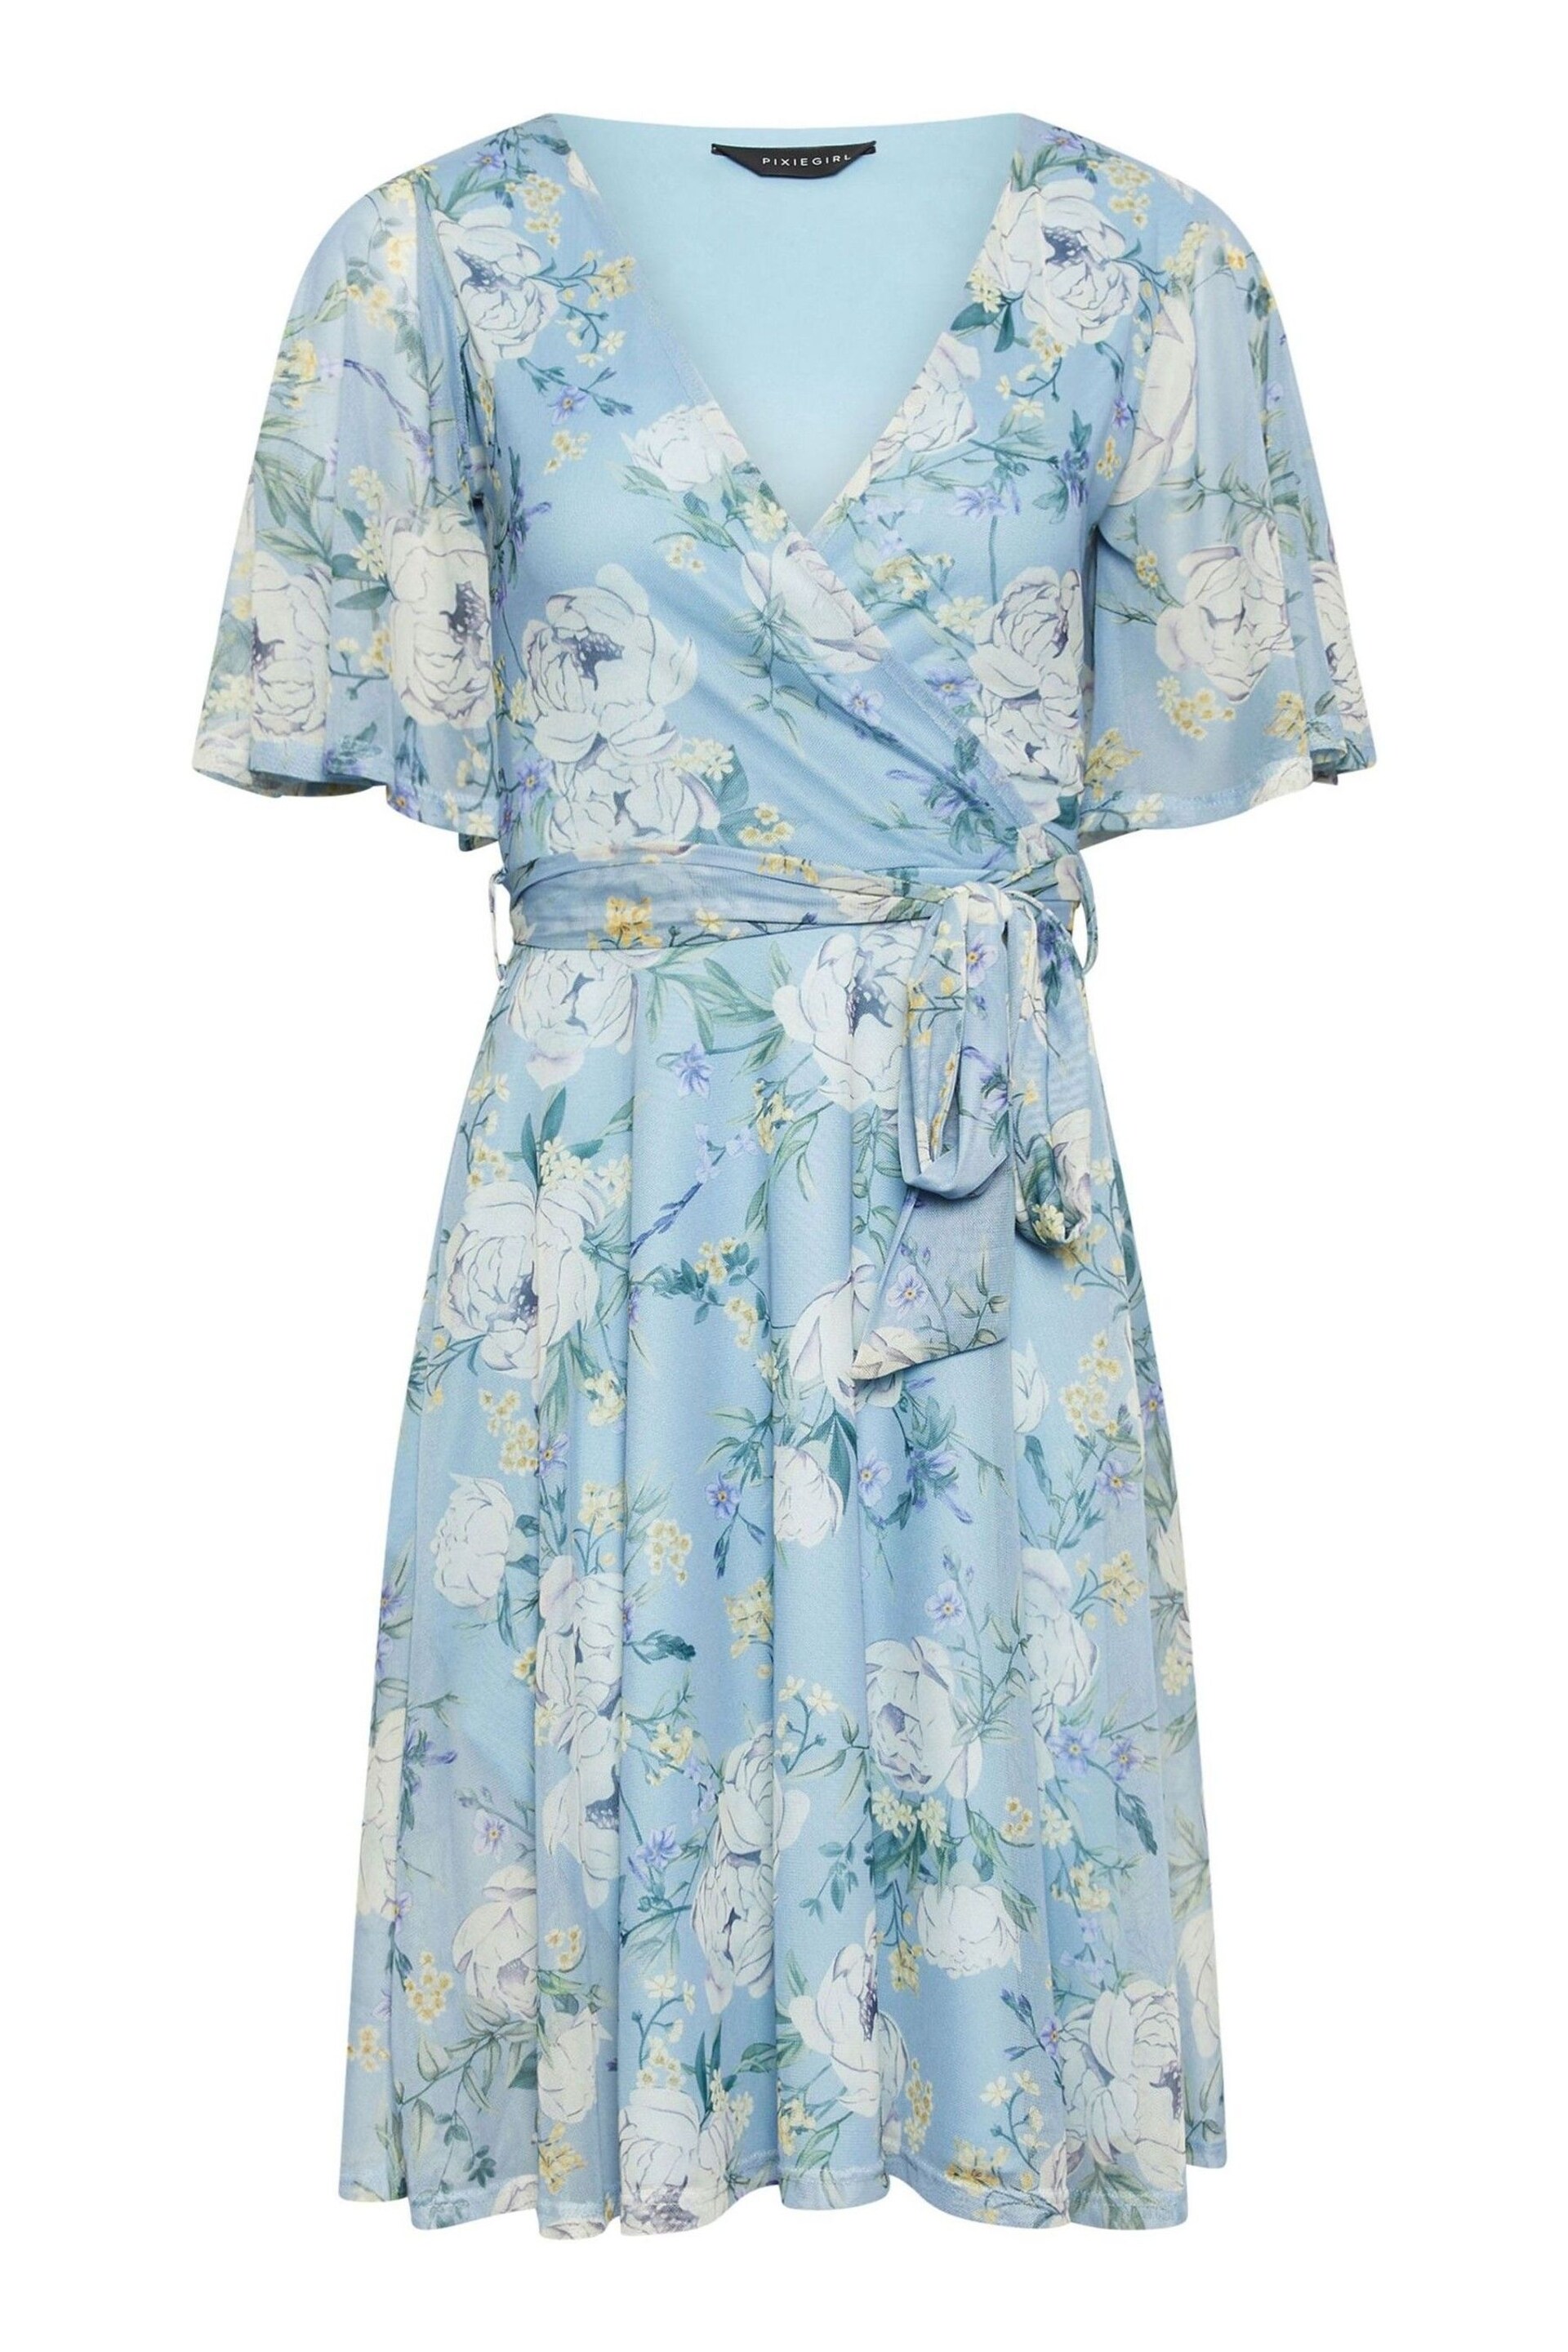 PixieGirl Petite Blue Floral Print Mesh Wrap Dress - Image 5 of 5